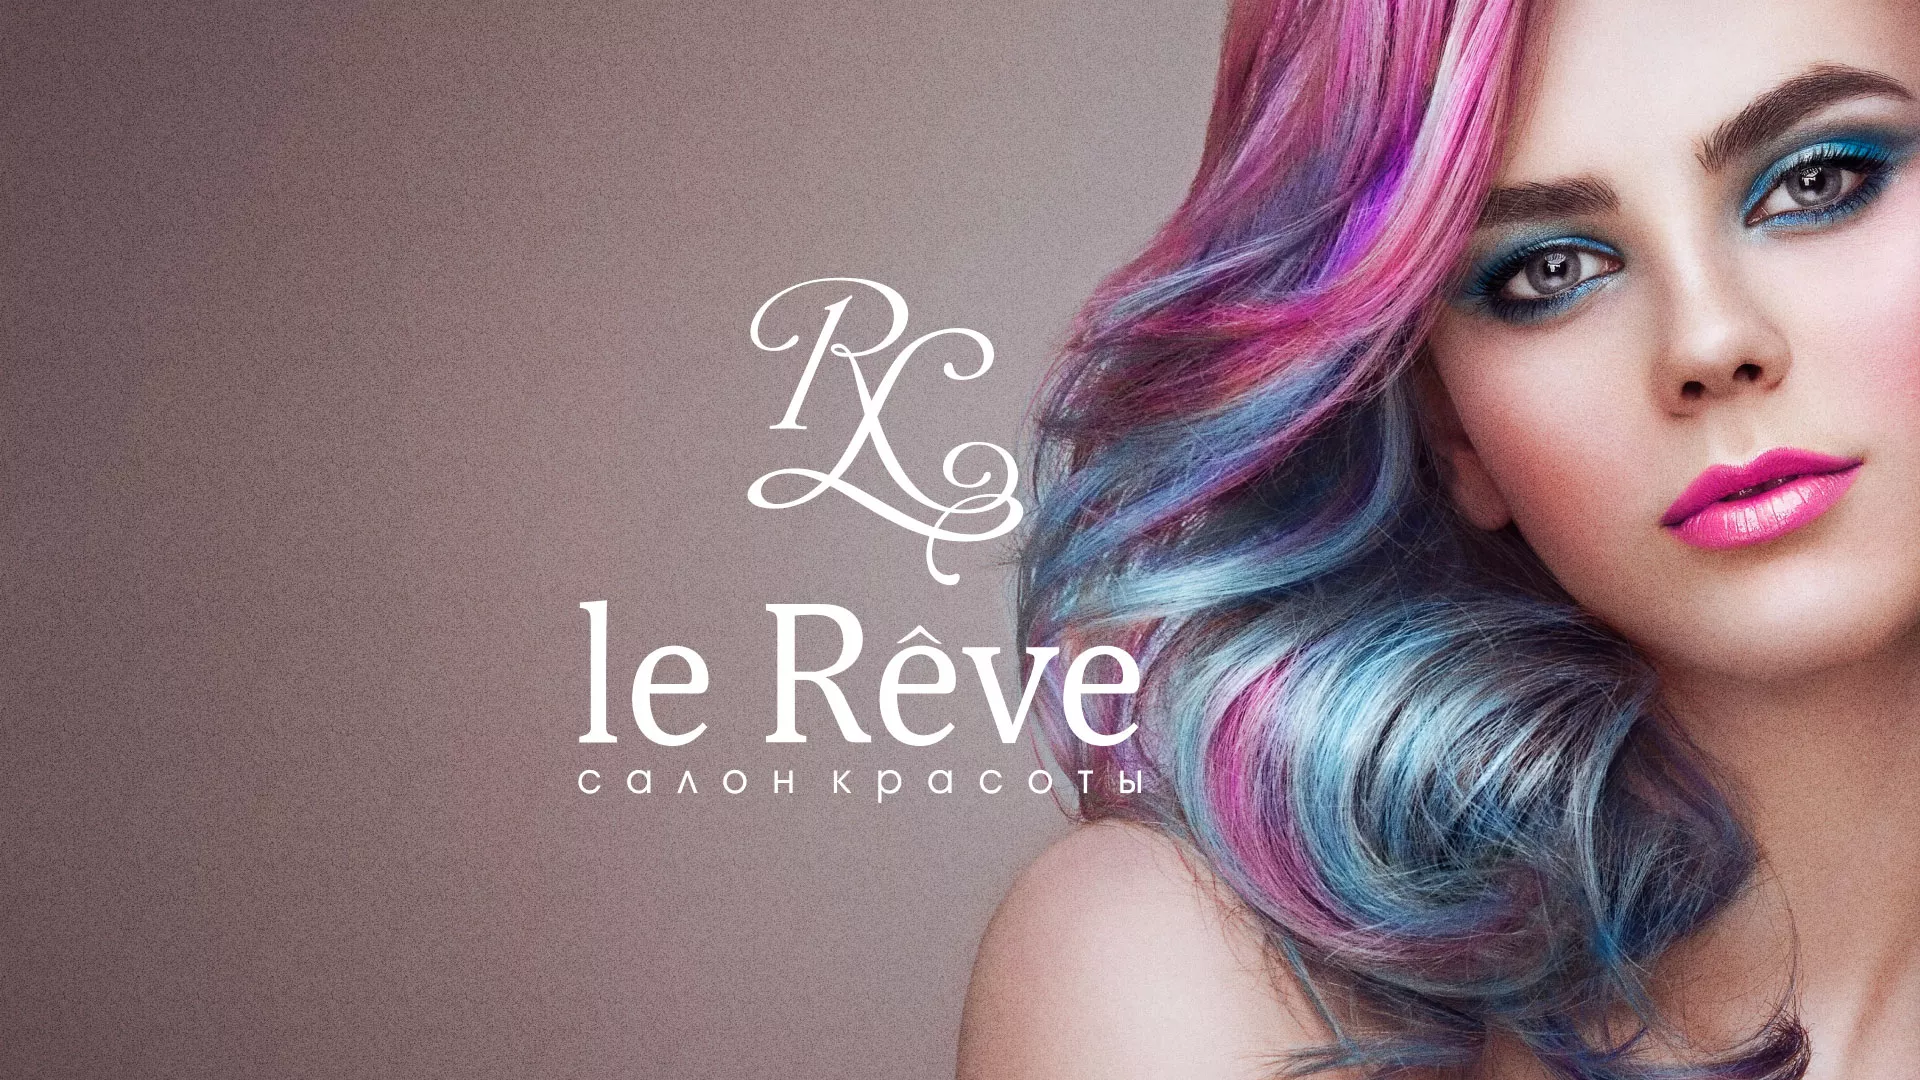 Создание сайта для салона красоты «Le Reve» в Благовещенске